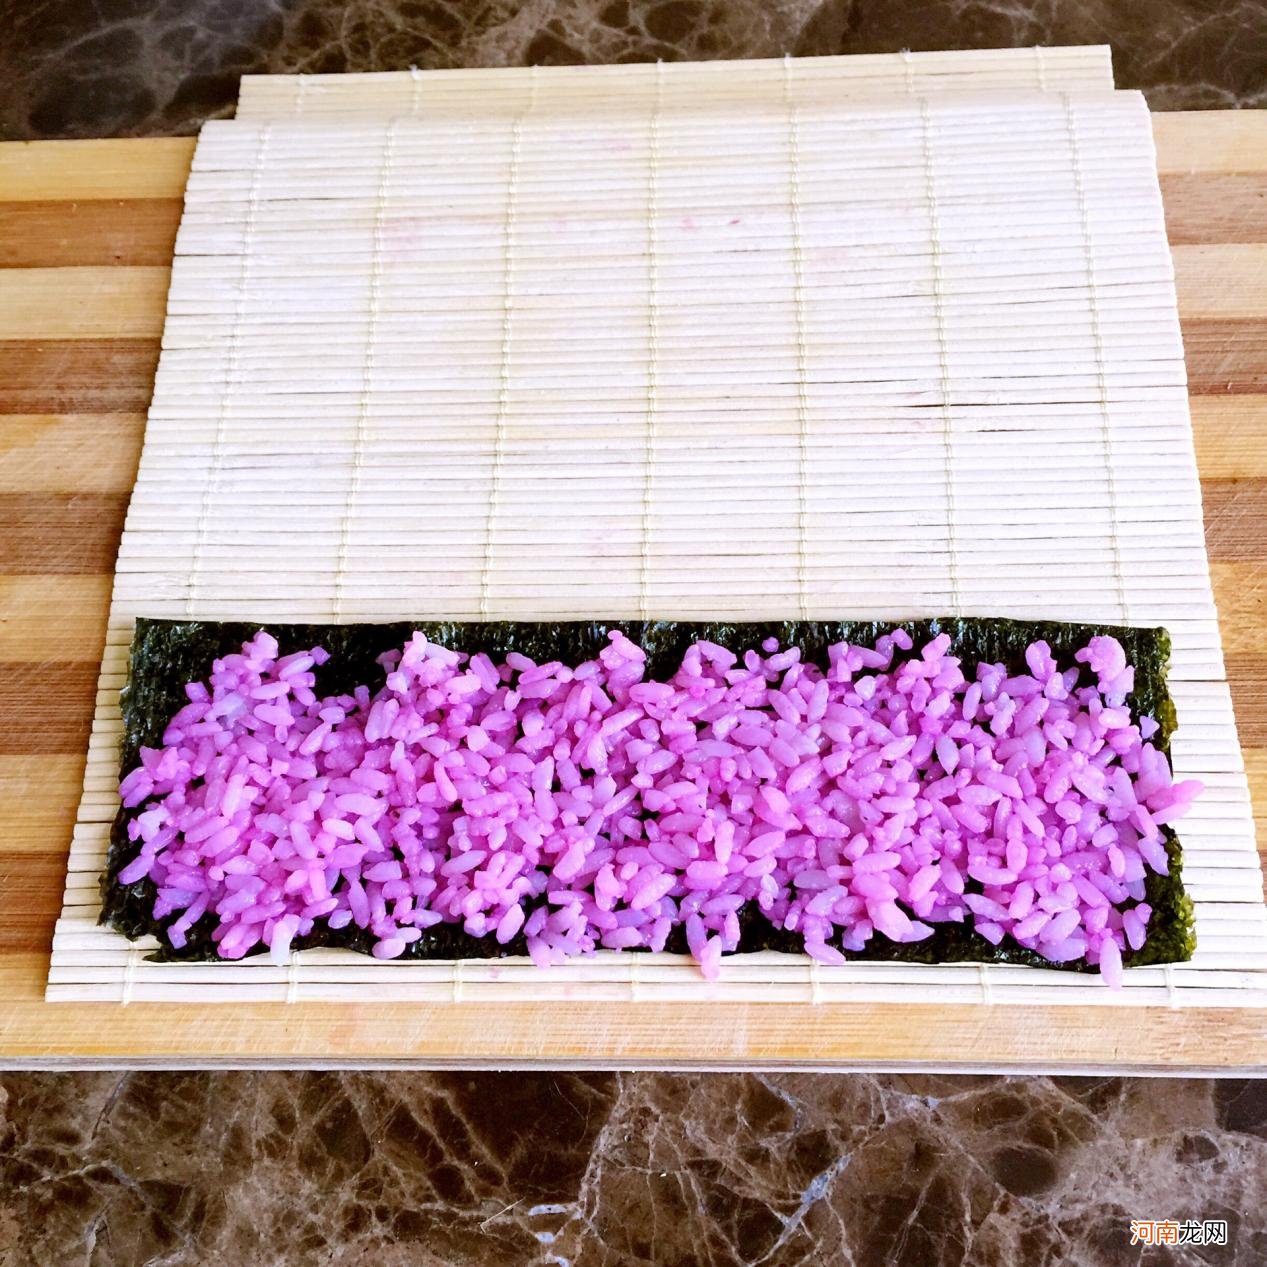 紫菜包饭的描述 紫菜包饭饭团的做法和材料